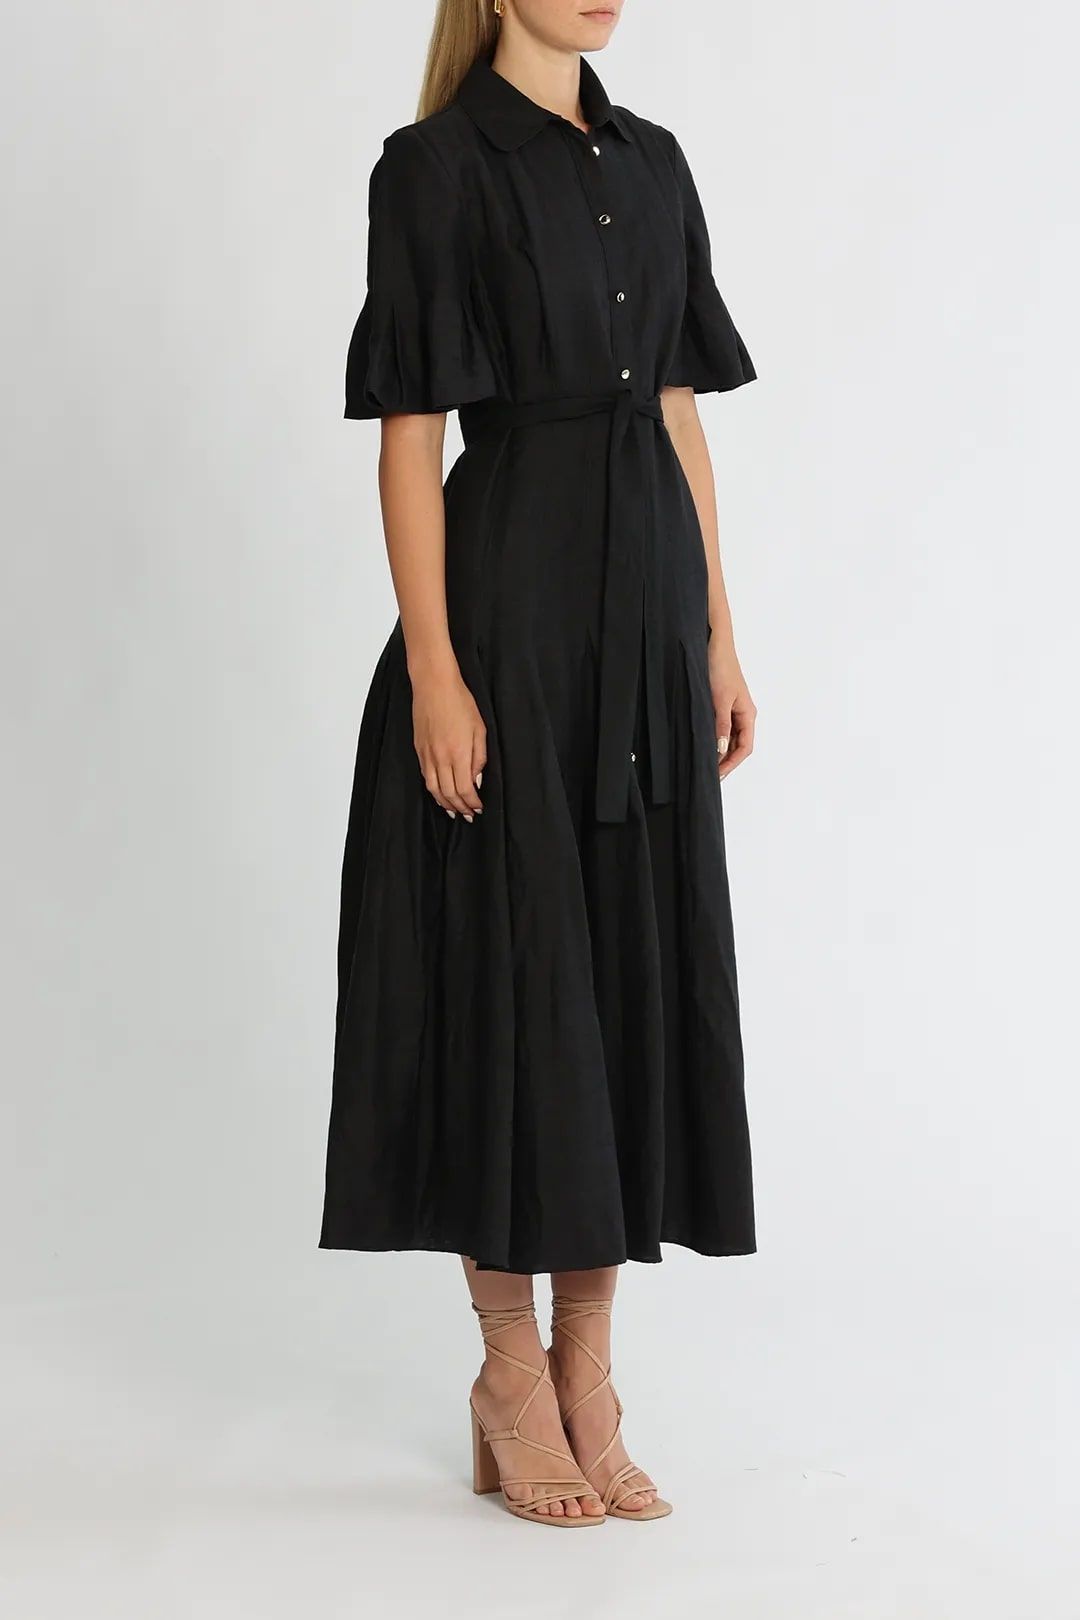 Rent Lockwood dress in black for formal events.